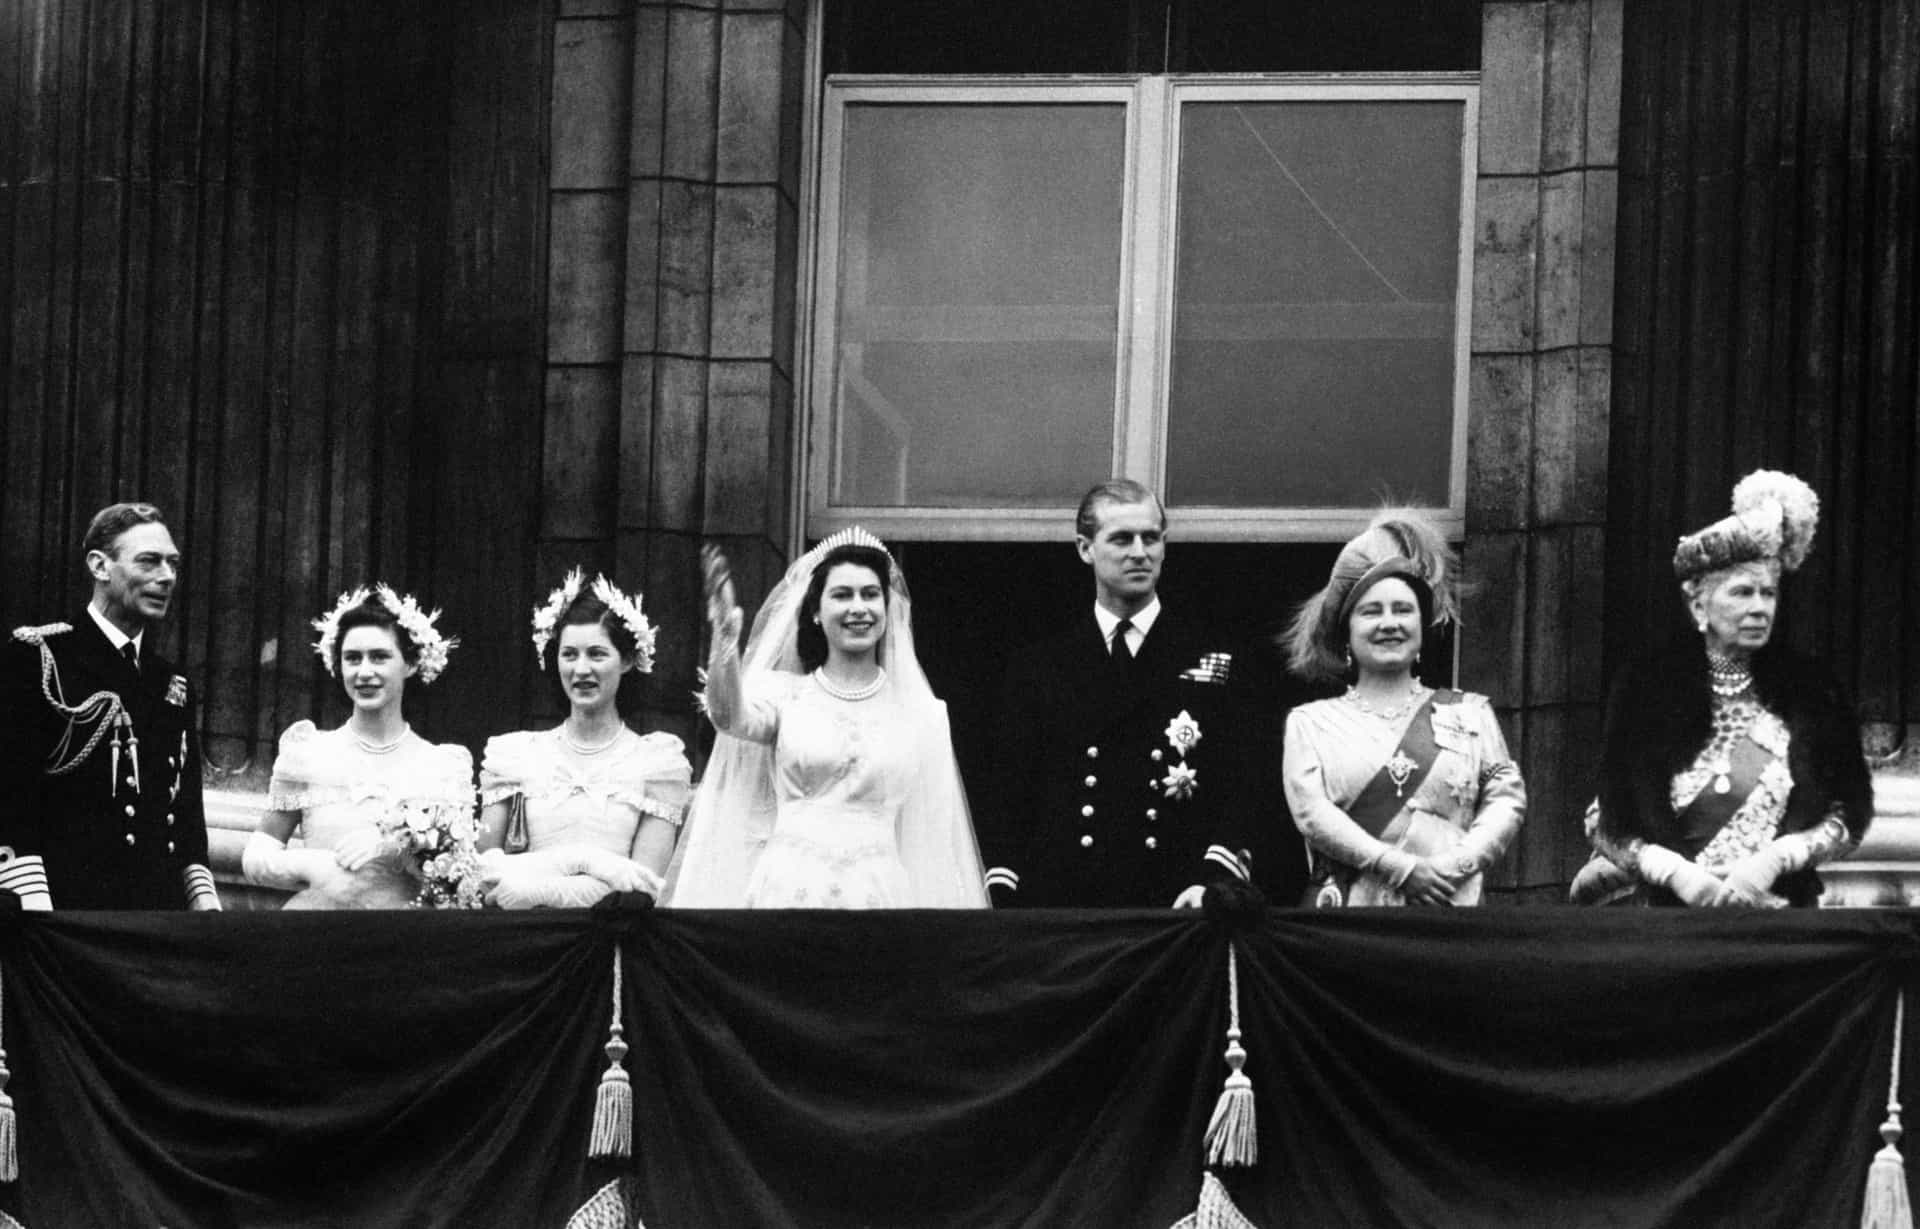 Prinzessin Elisabeth heiratete 1947 <a href="https://de.starsinsider.com/promis/258459/das-leben-und-wirken-seiner-koeniglichen-hoheit-prinz-philip" rel="noopener">Philip Mountbatten</a>, mit Margaret als Brautjungfer an ihrer Seite.